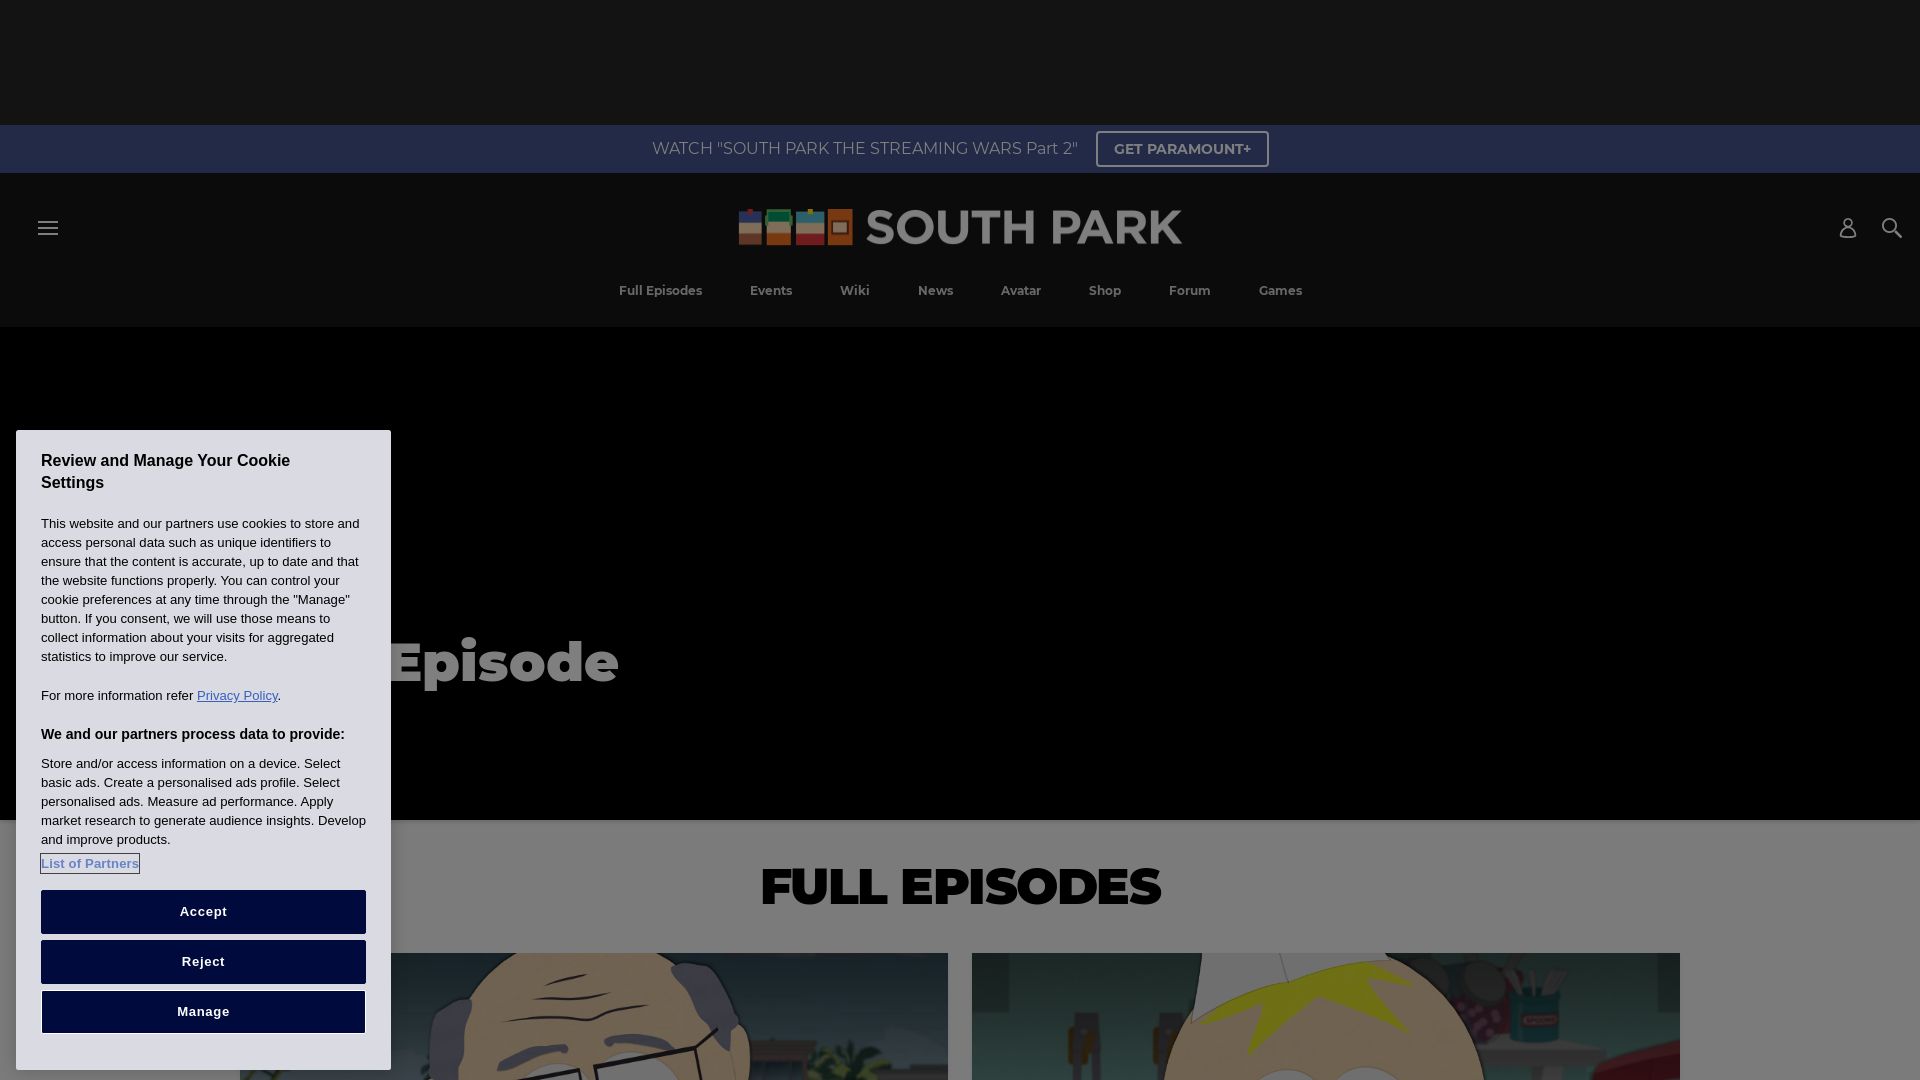 Stato del sito web southparkstudios.com è   ONLINE